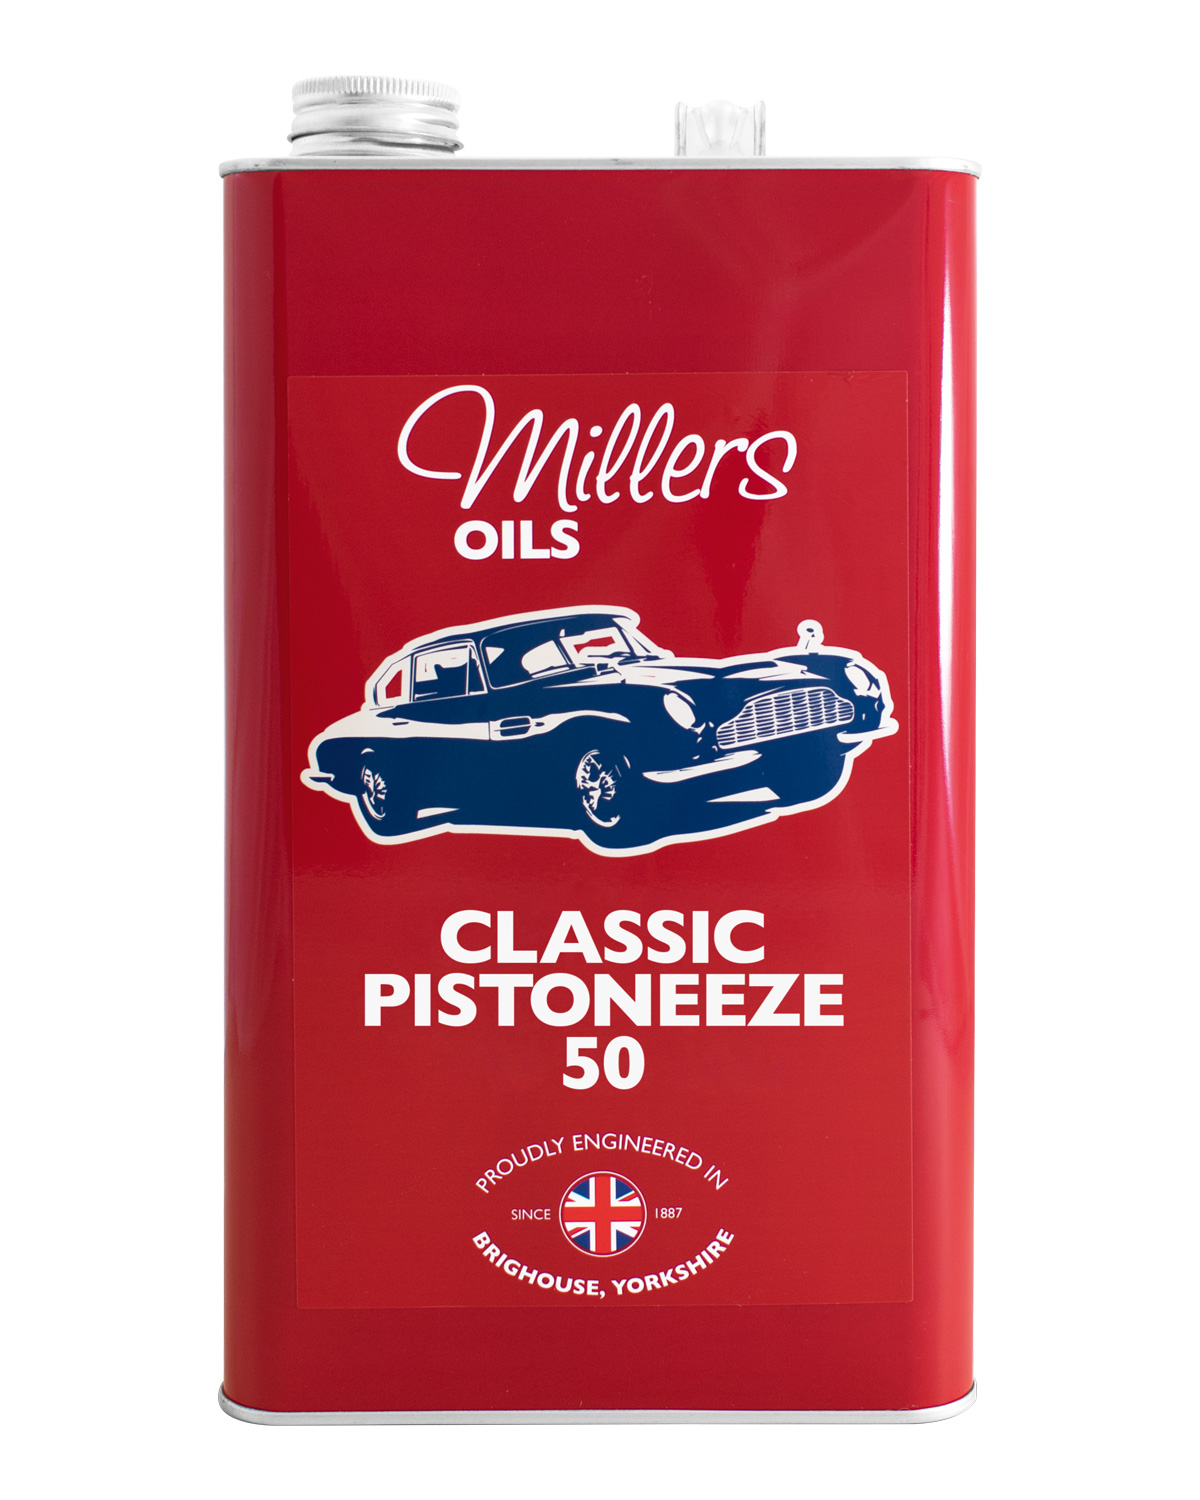 Millers Oils Classic Pistoneeze-50, 5 Liter